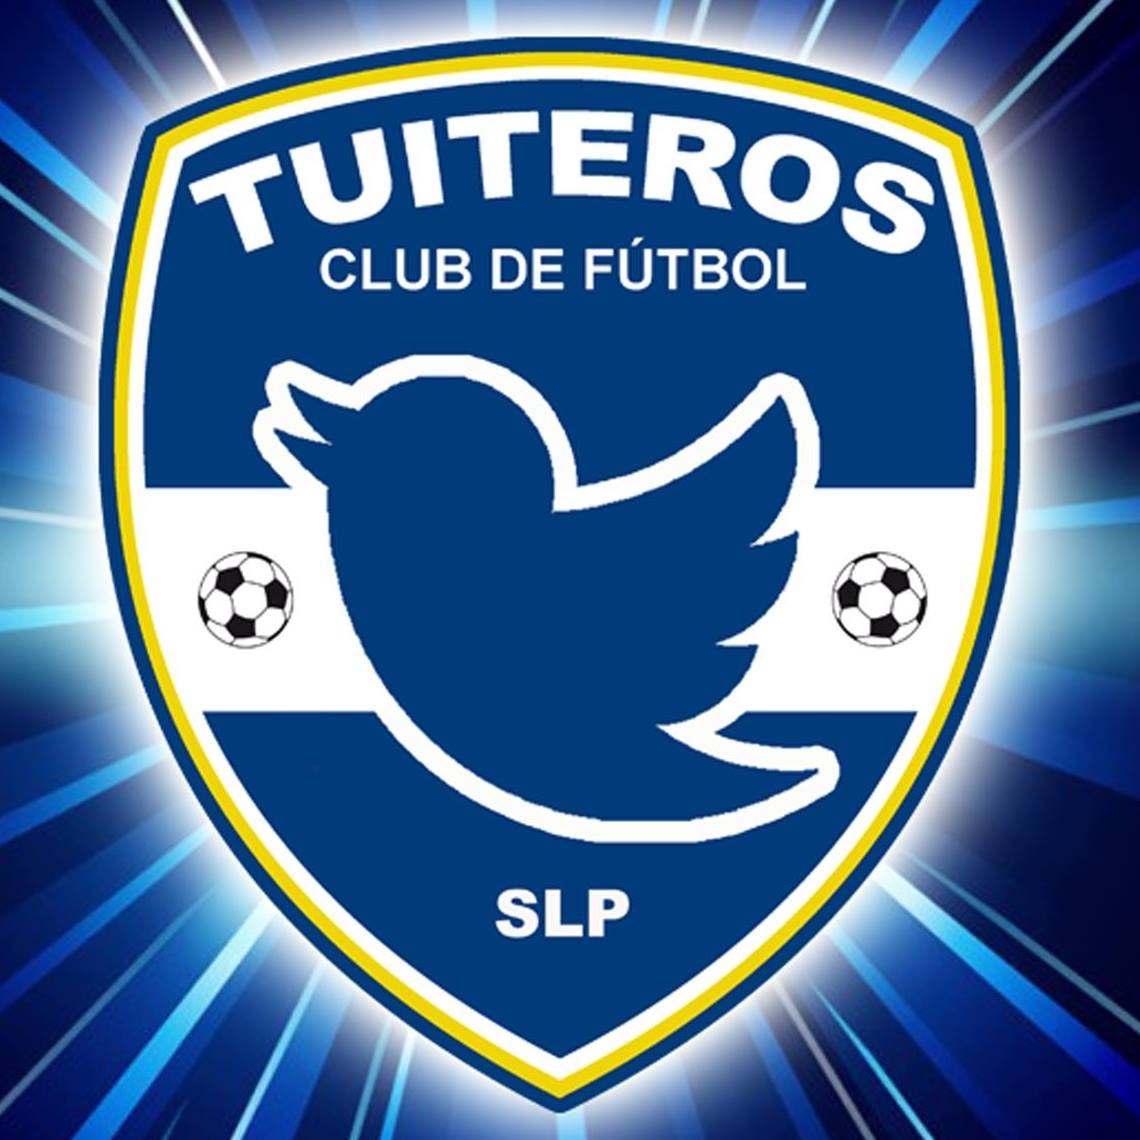 TUITEROS_FC_SLP